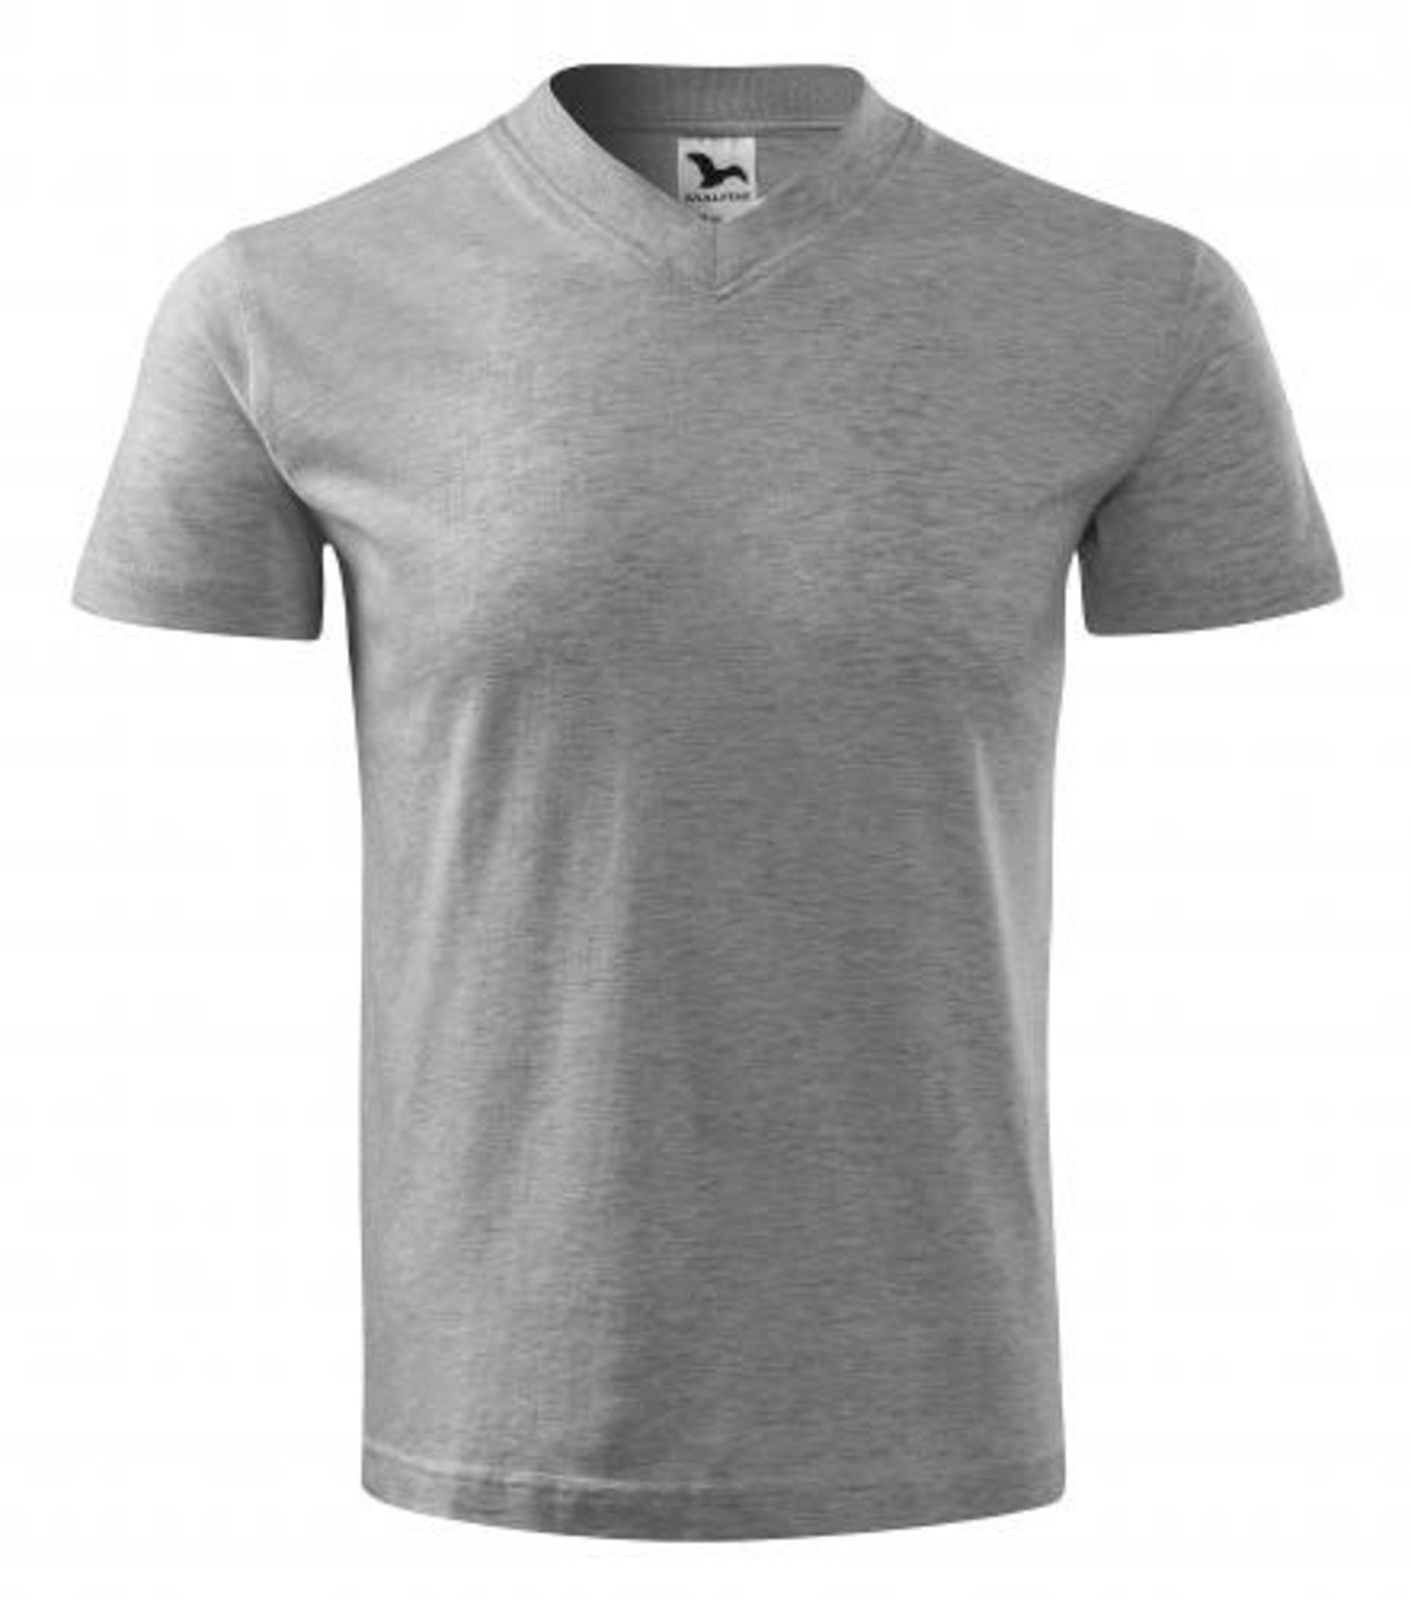 Unisex tričko s výstrihom Adler V-Neck 102 - veľkosť: M, farba: tmavosivý melír